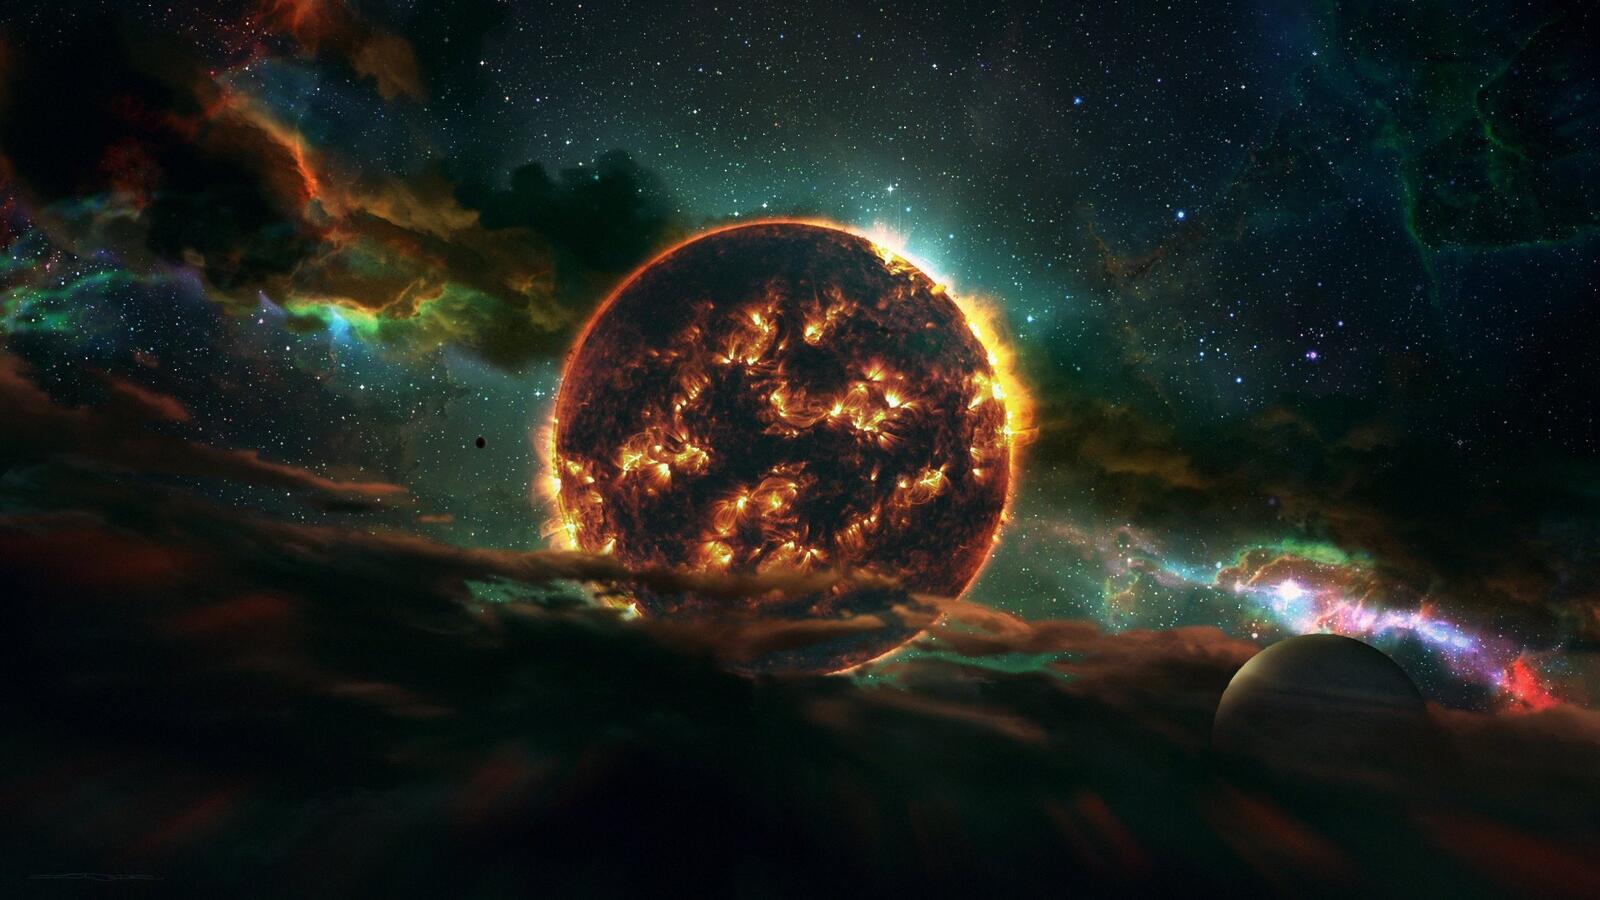 Бесплатное фото Огненная звезда с планетами и туманностью